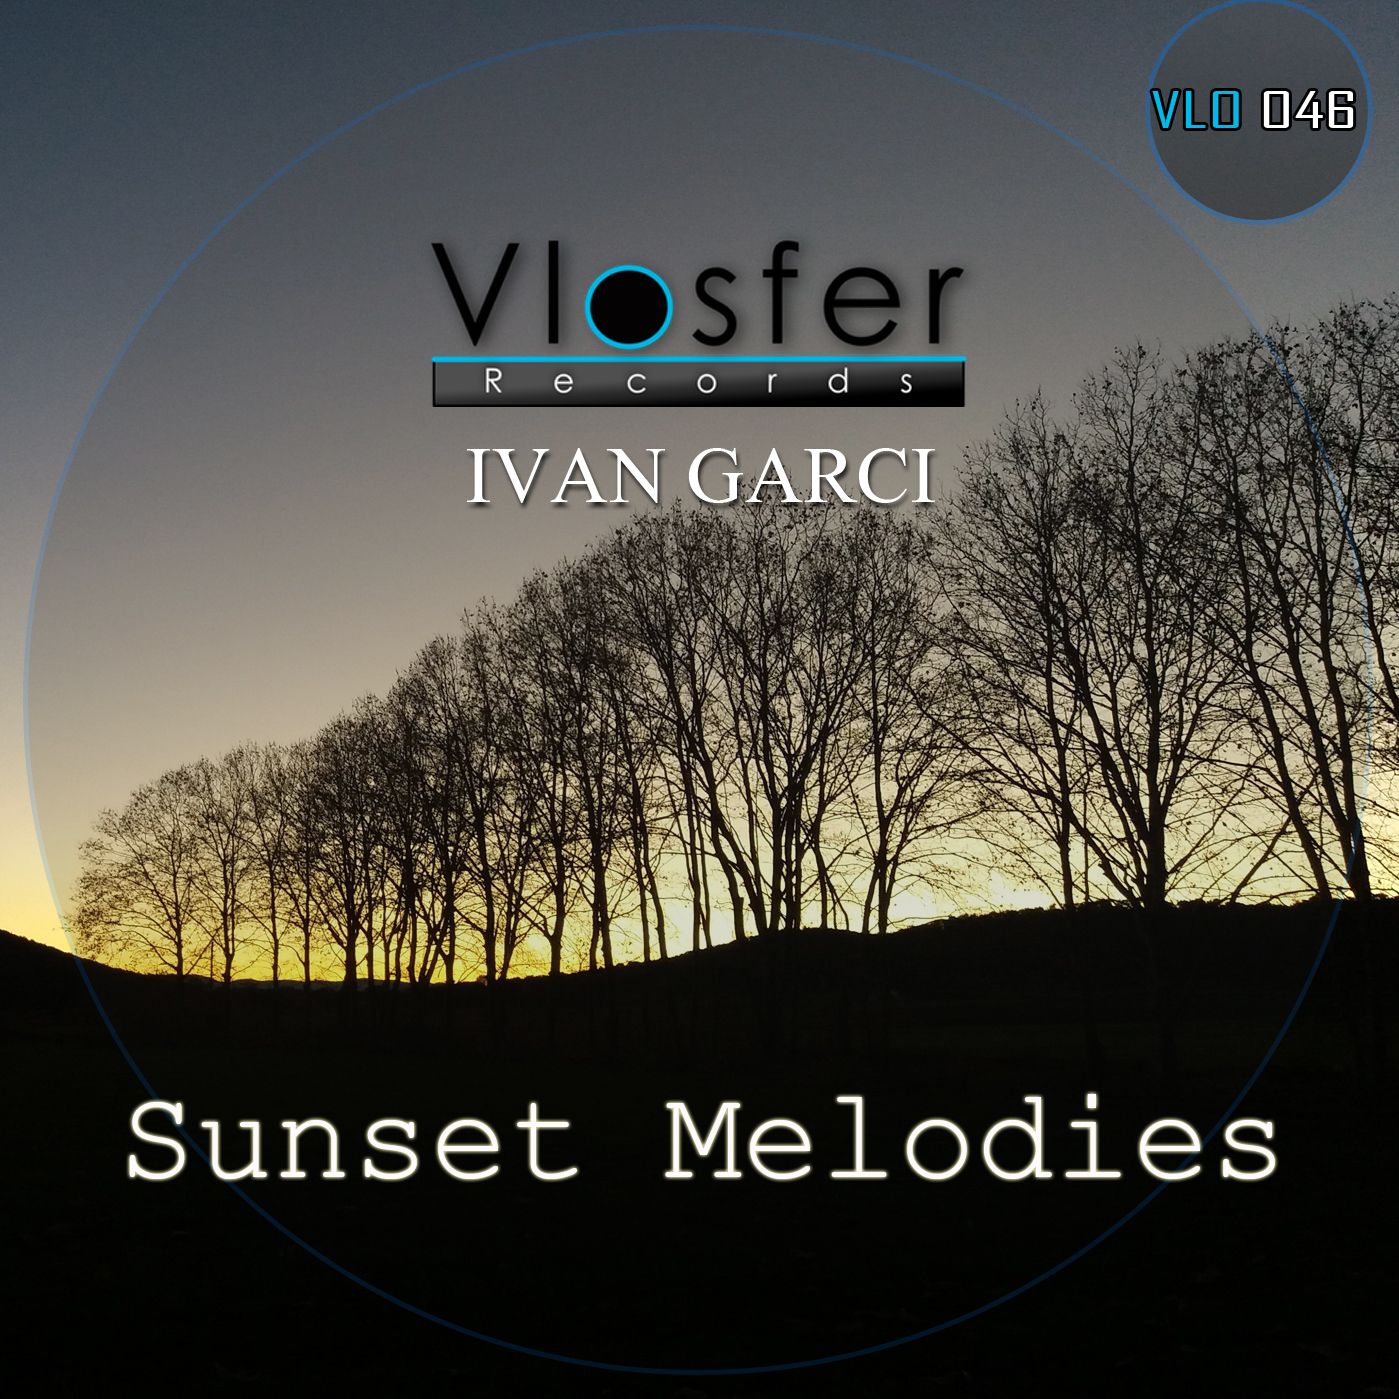 ទាញយក Clear - Ivan Garci (low quality sound) Vlosfer records.